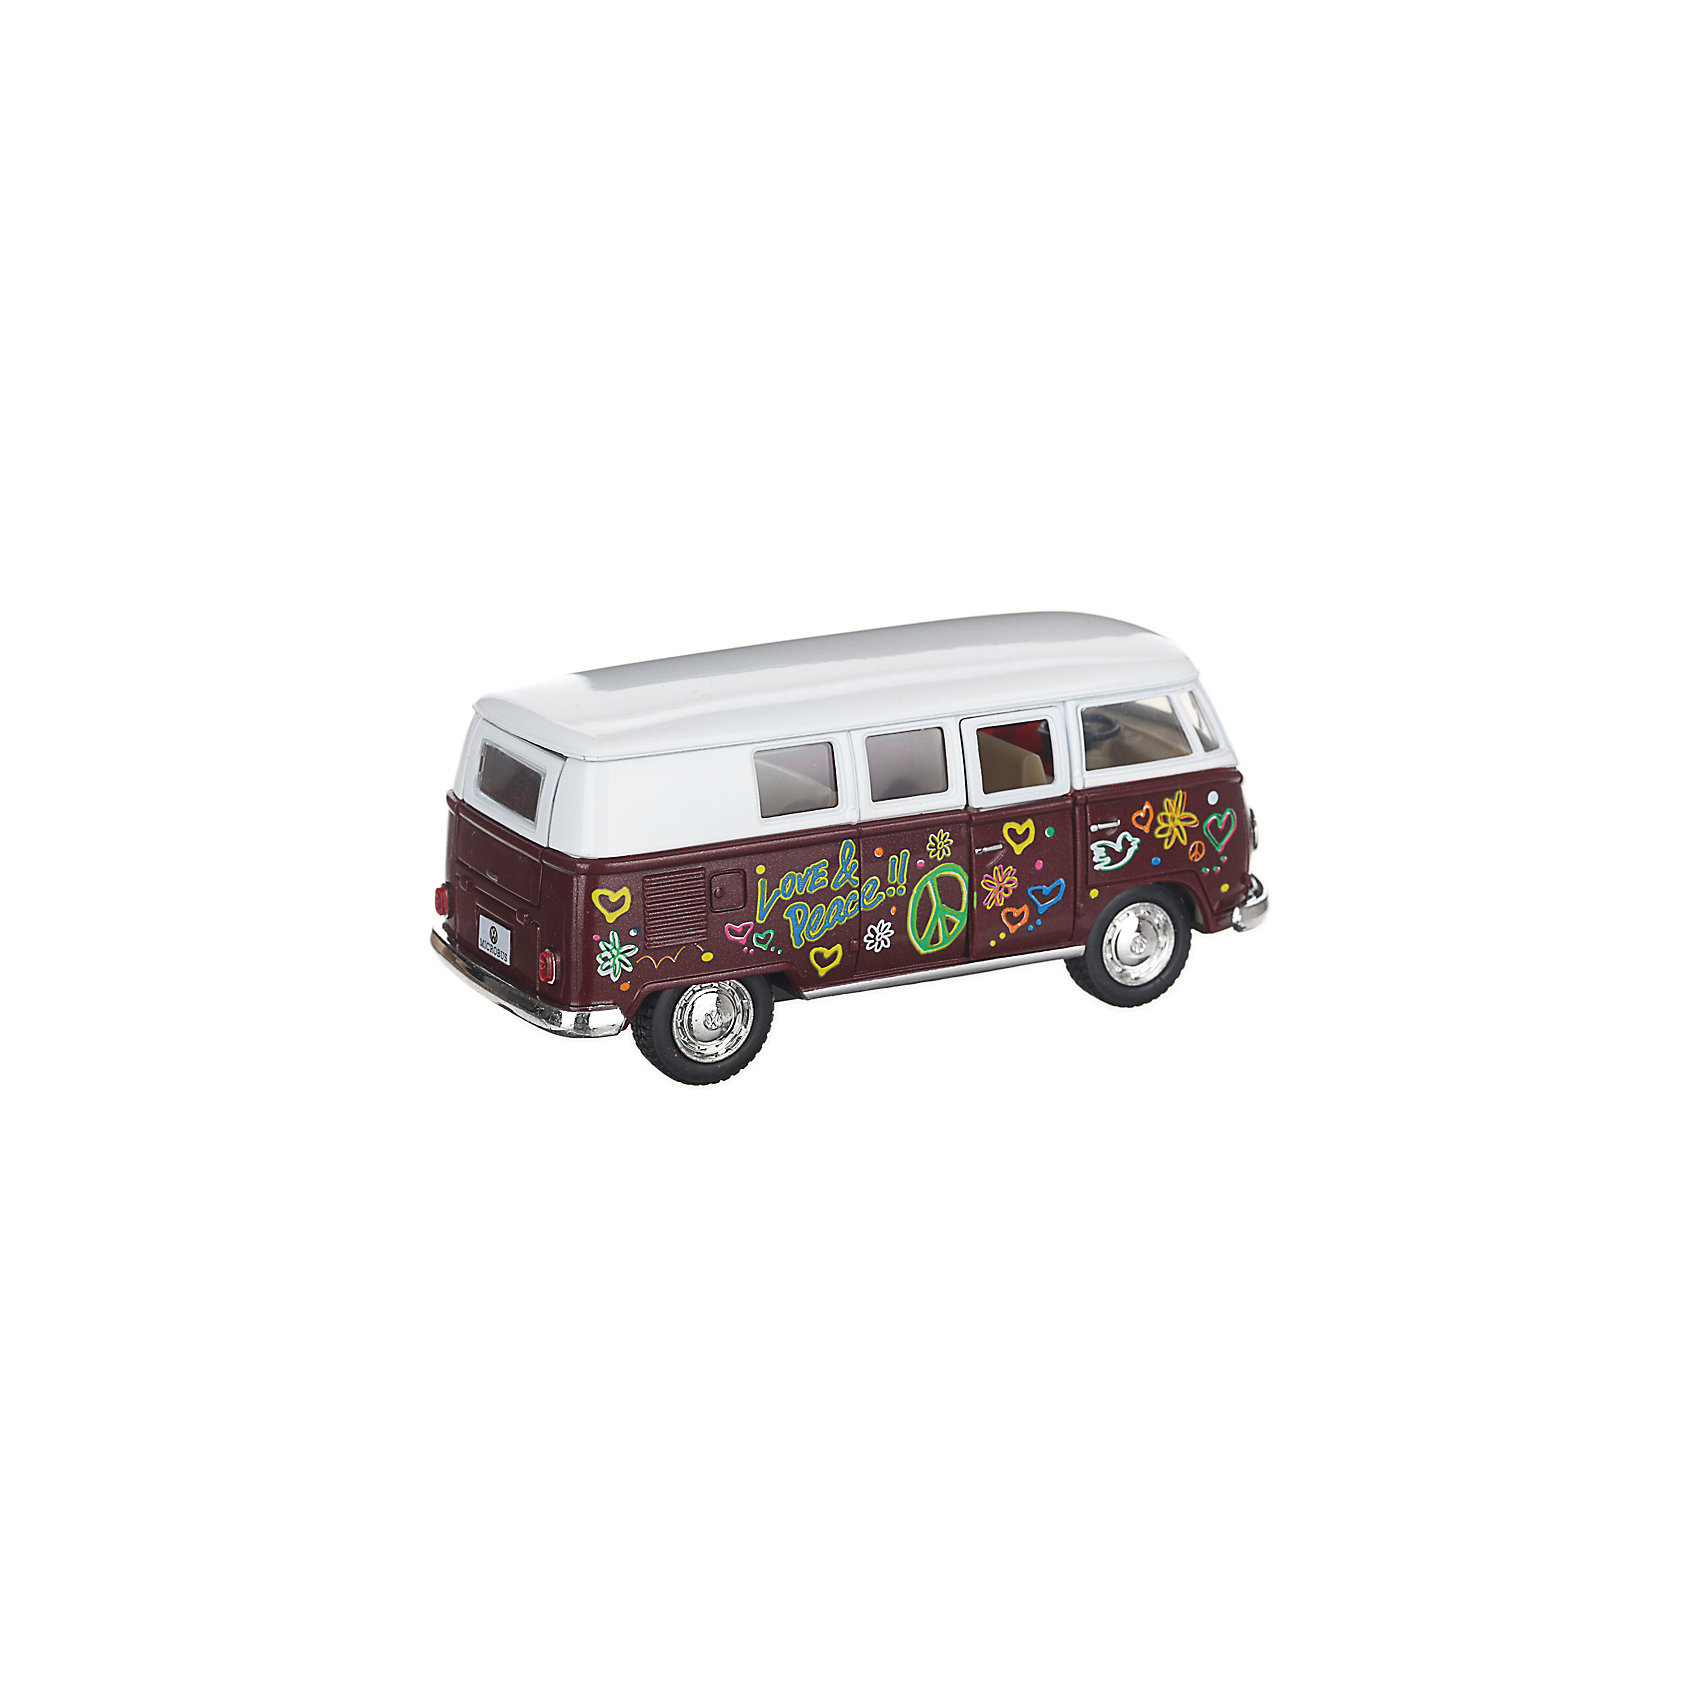 фото Металлический автобус Serinity Toys Volkswagen Classical раскрашенный, бордовая